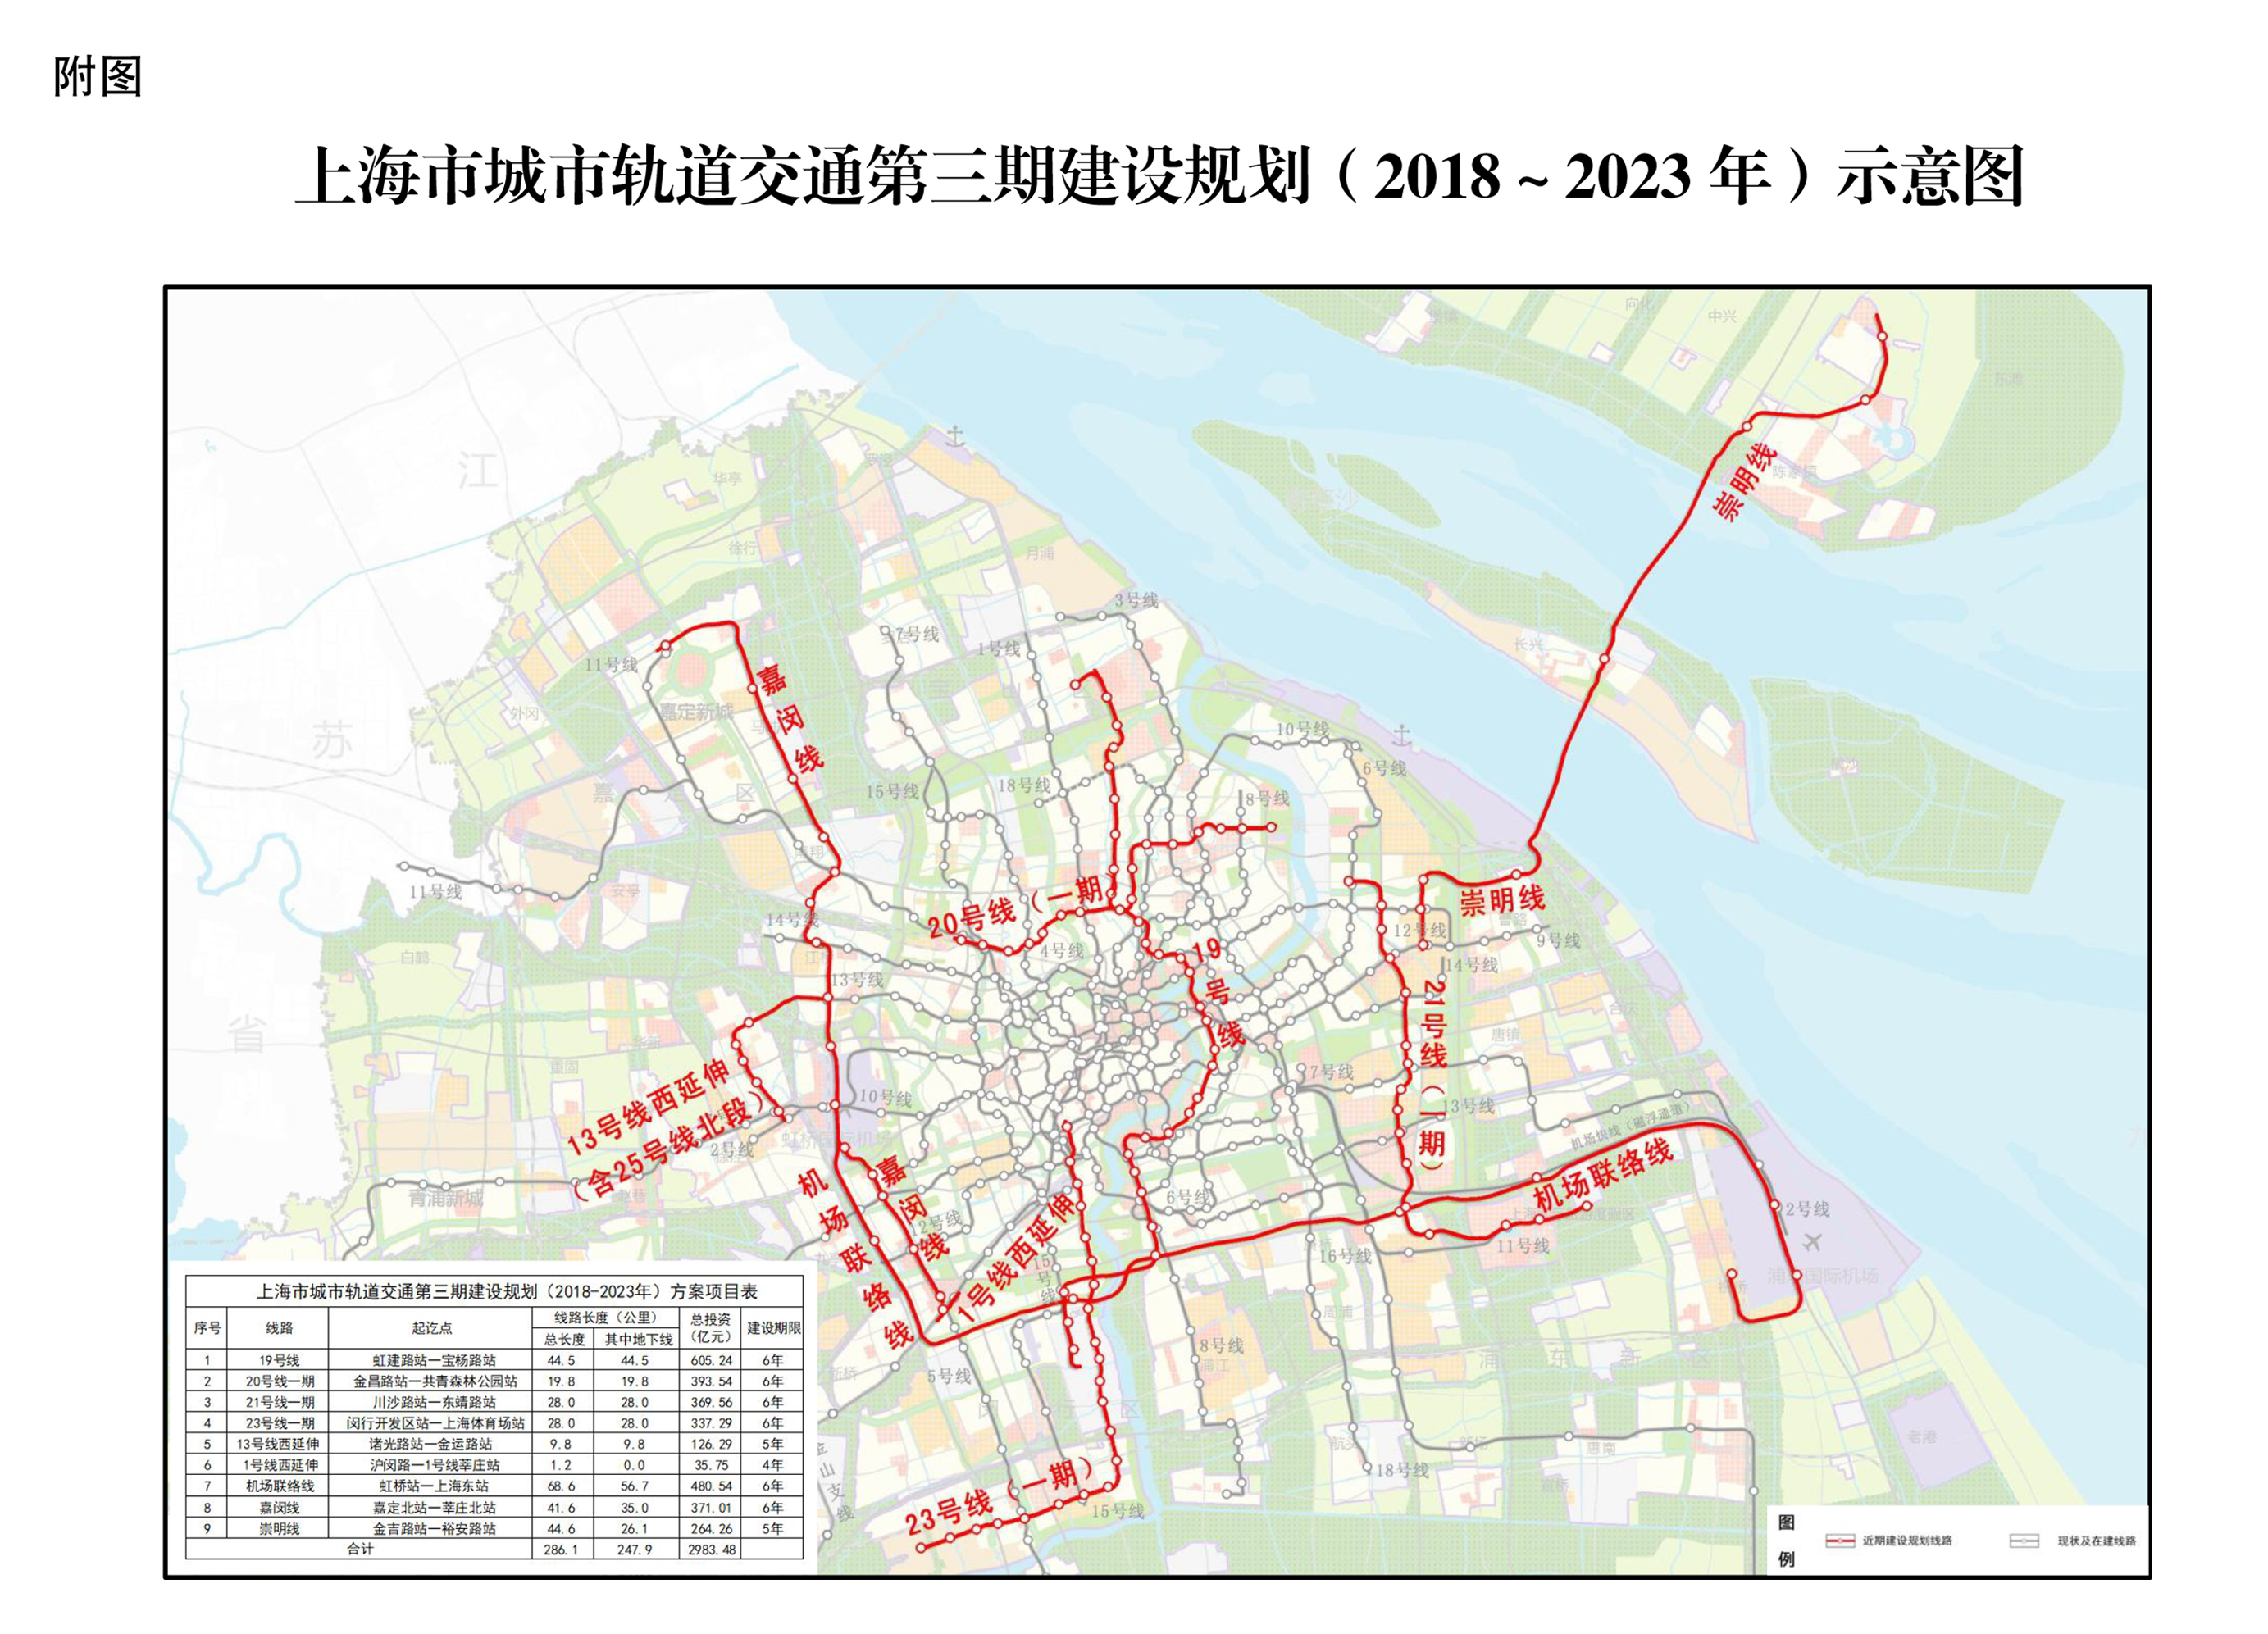 上海市城市軌道交通第三期建設規劃線路示意圖